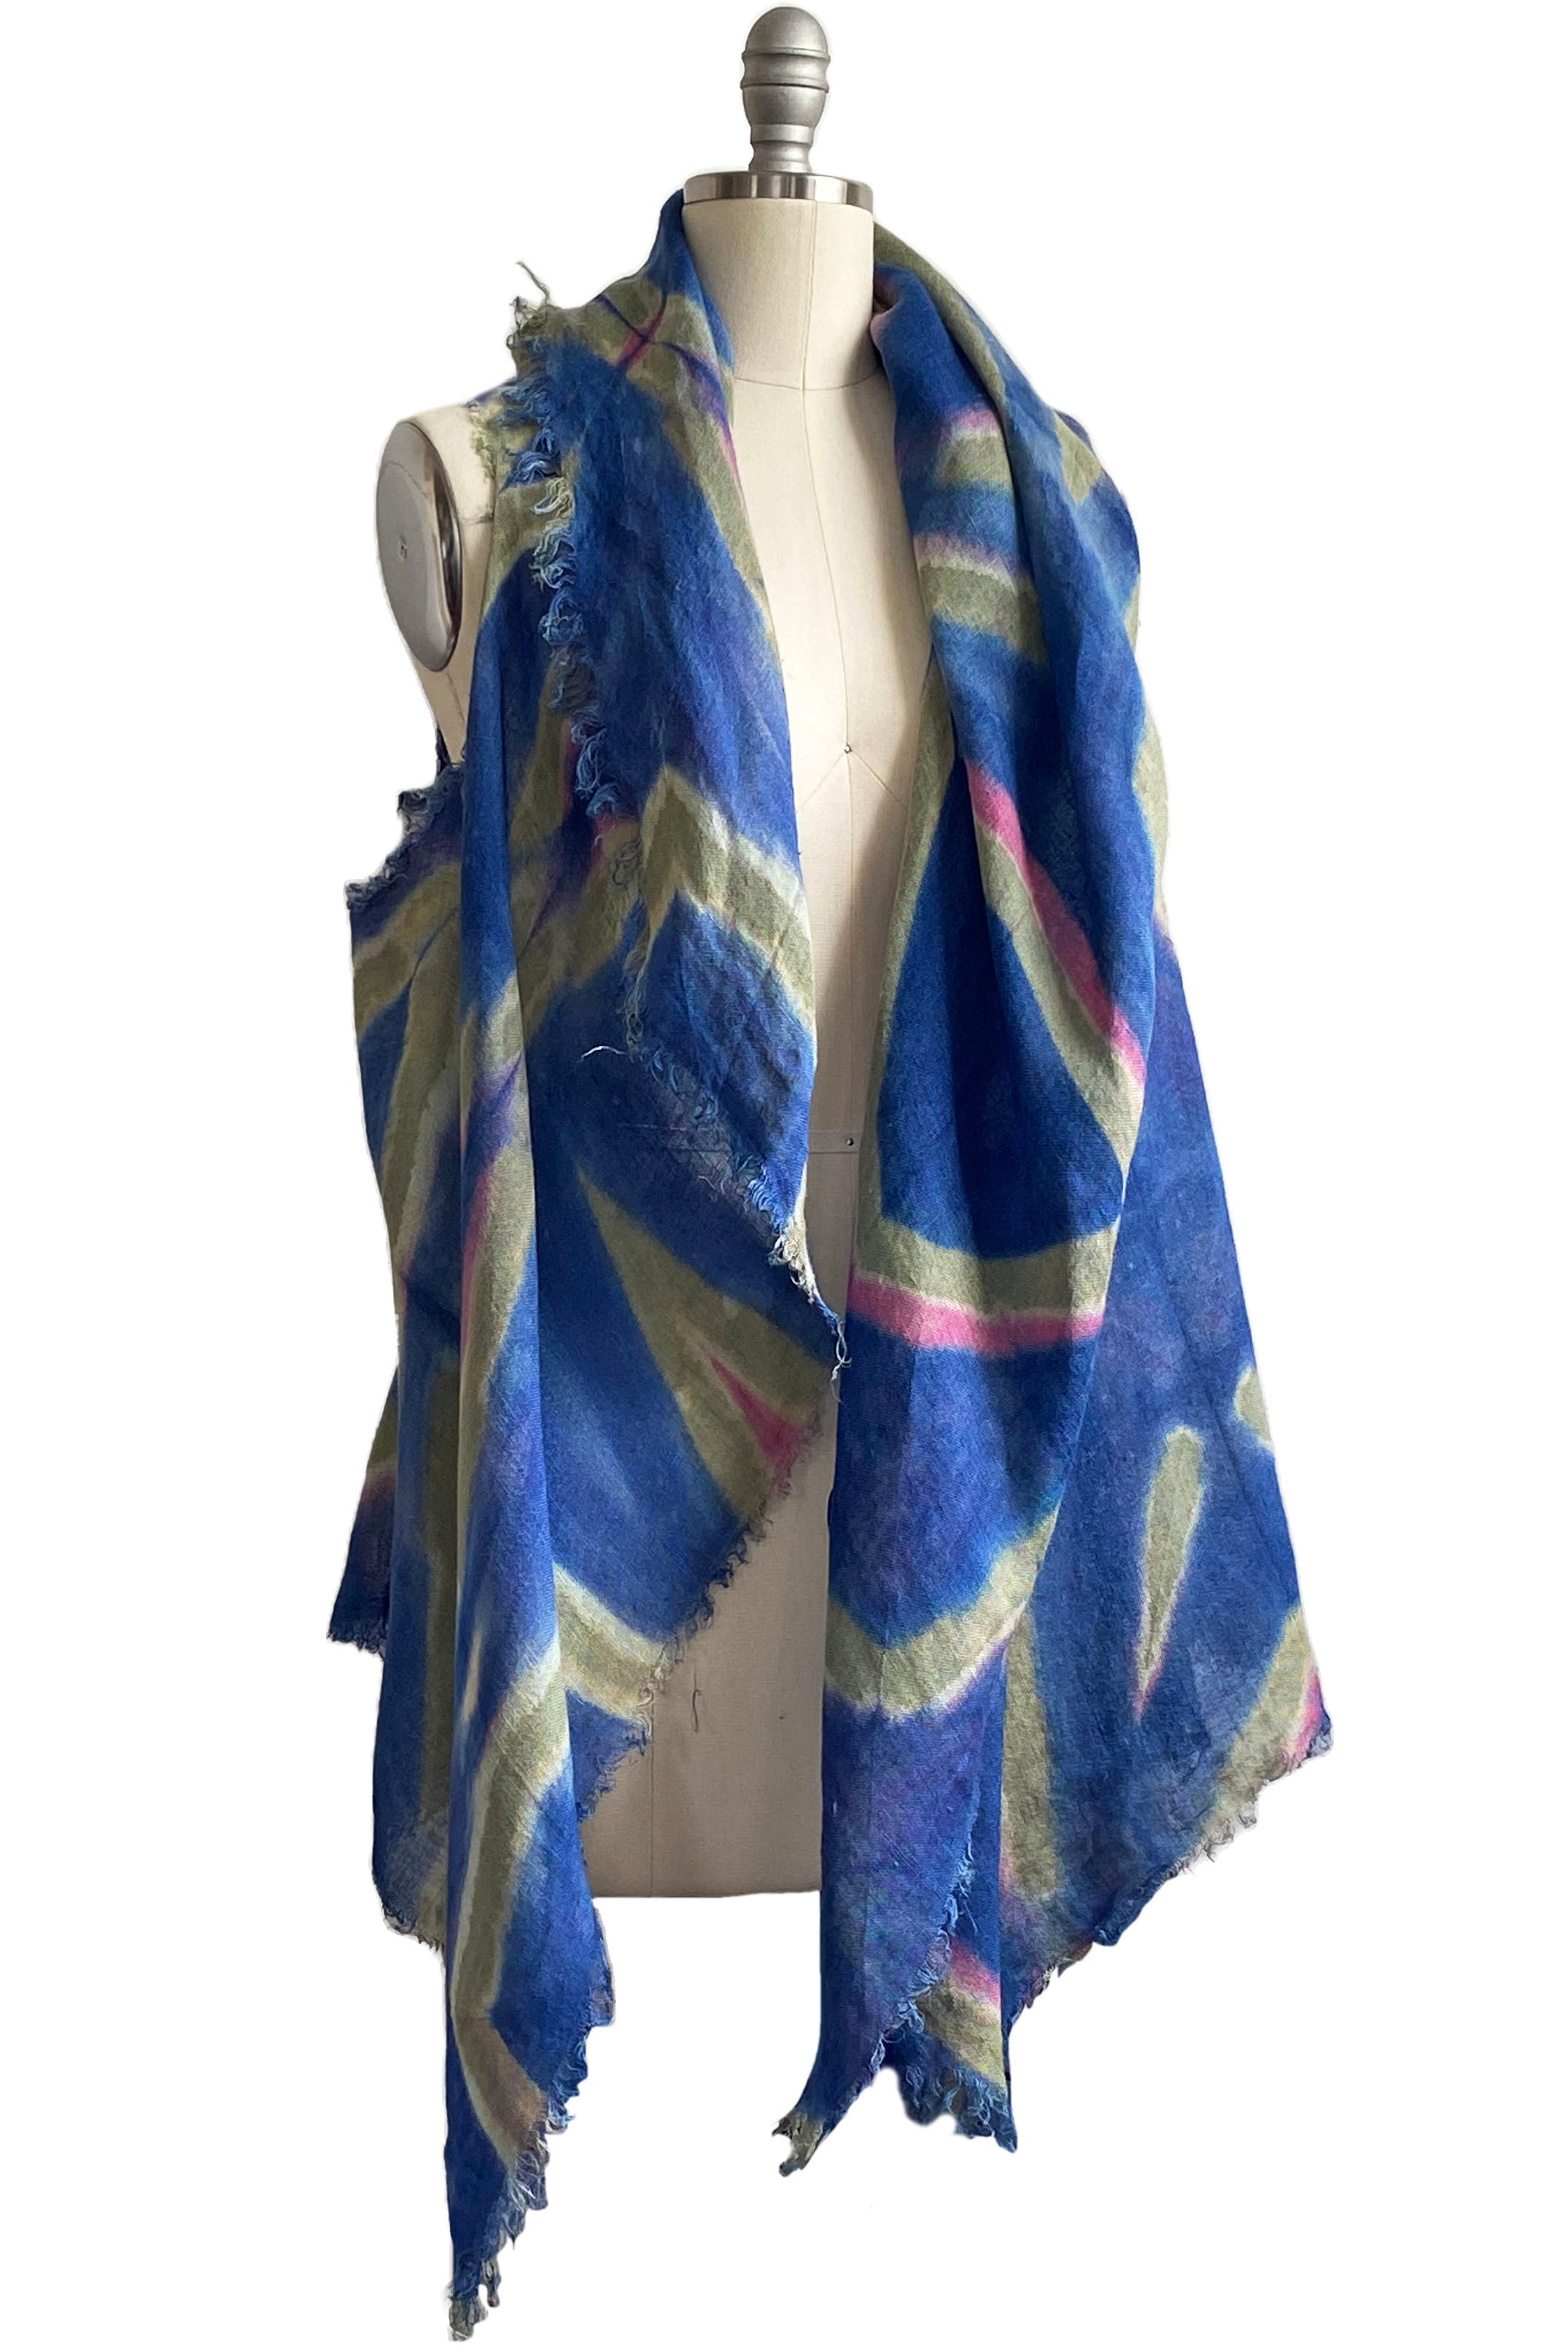 Asymmetrical Wrap Vest - Open Weave Linen w/ Itajime Dye - Periwinkle, Olive & Pink